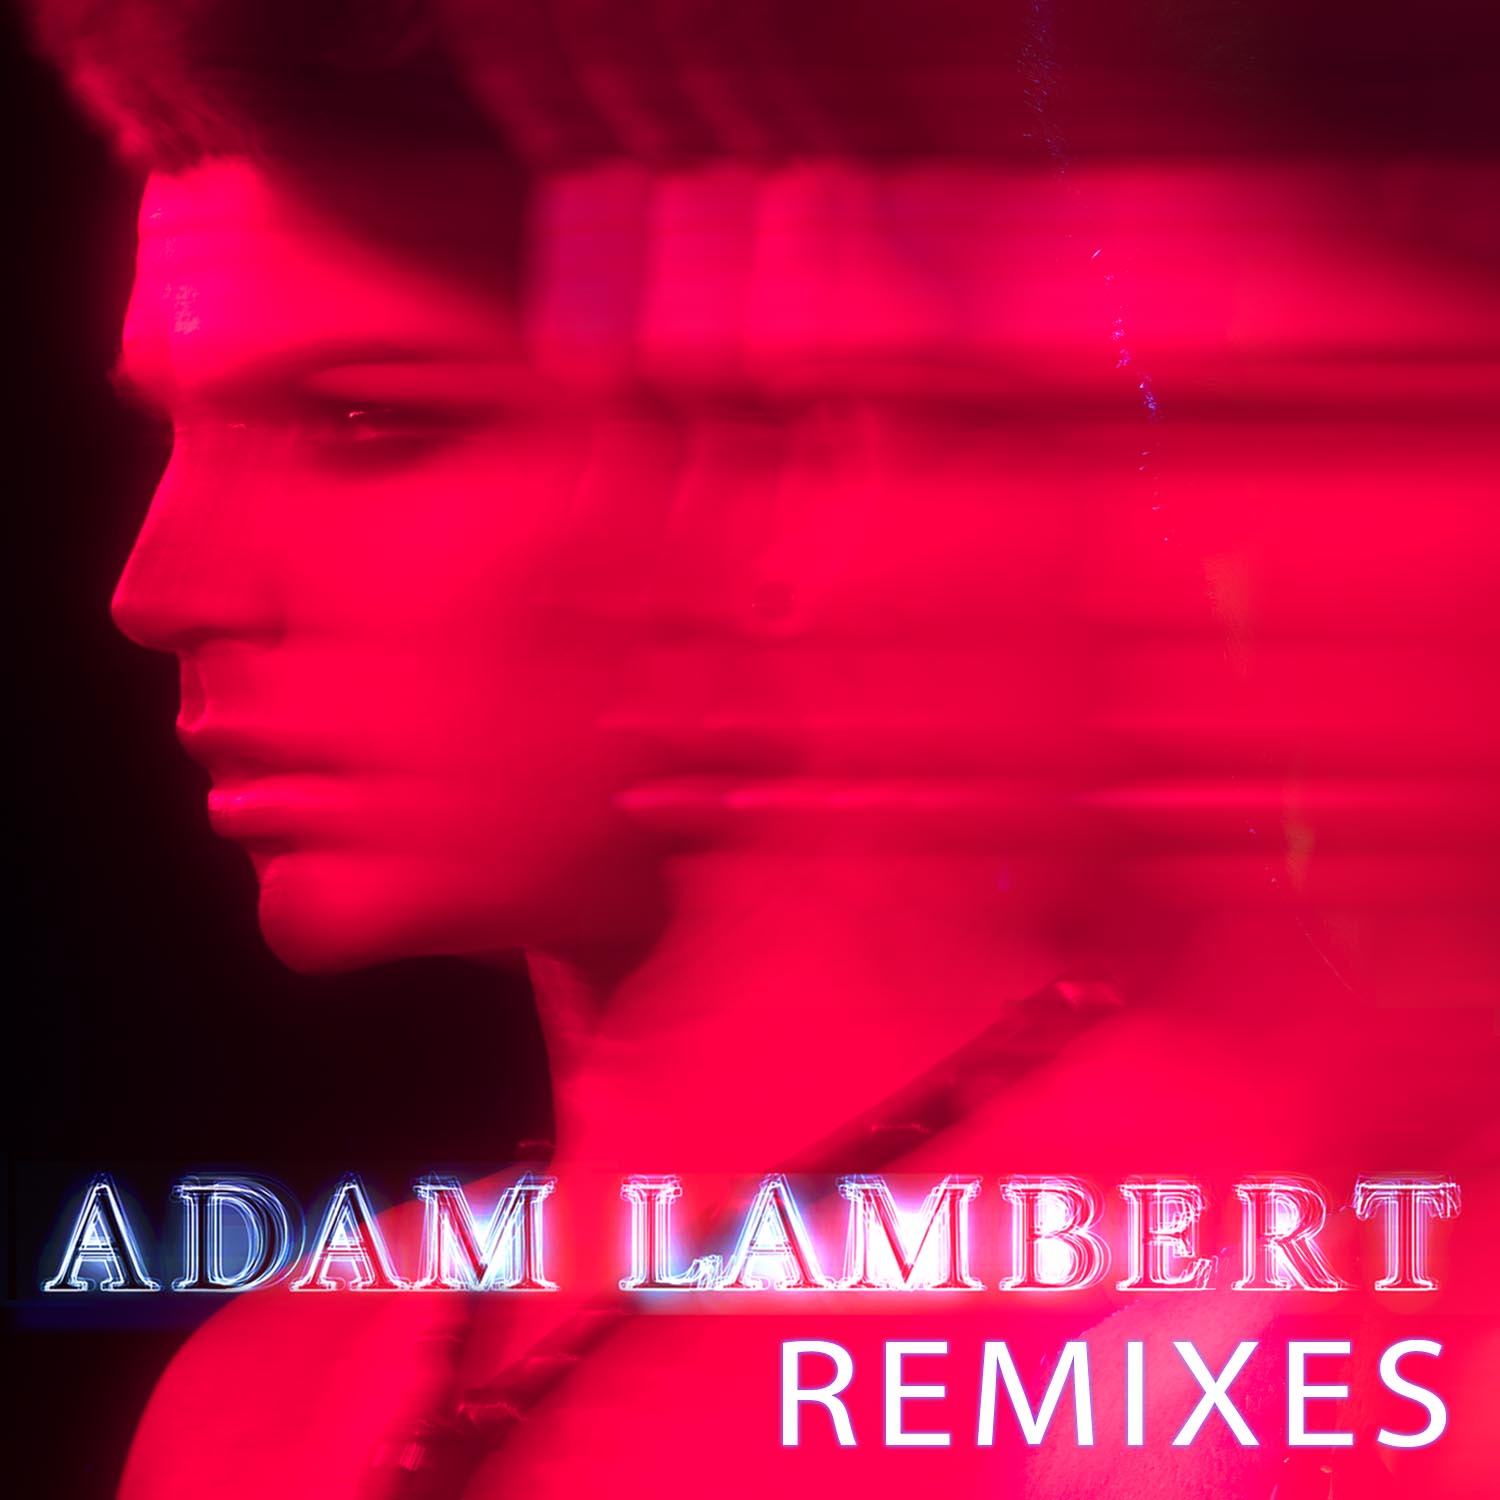 http://4.bp.blogspot.com/_mupIVJbjvuU/S8UVjtna-rI/AAAAAAAACx4/LdF4tMZJ5Ys/s1600/Adam+Lambert+-+Remixes+EP+%28Official+Album+Cover%29.jpg